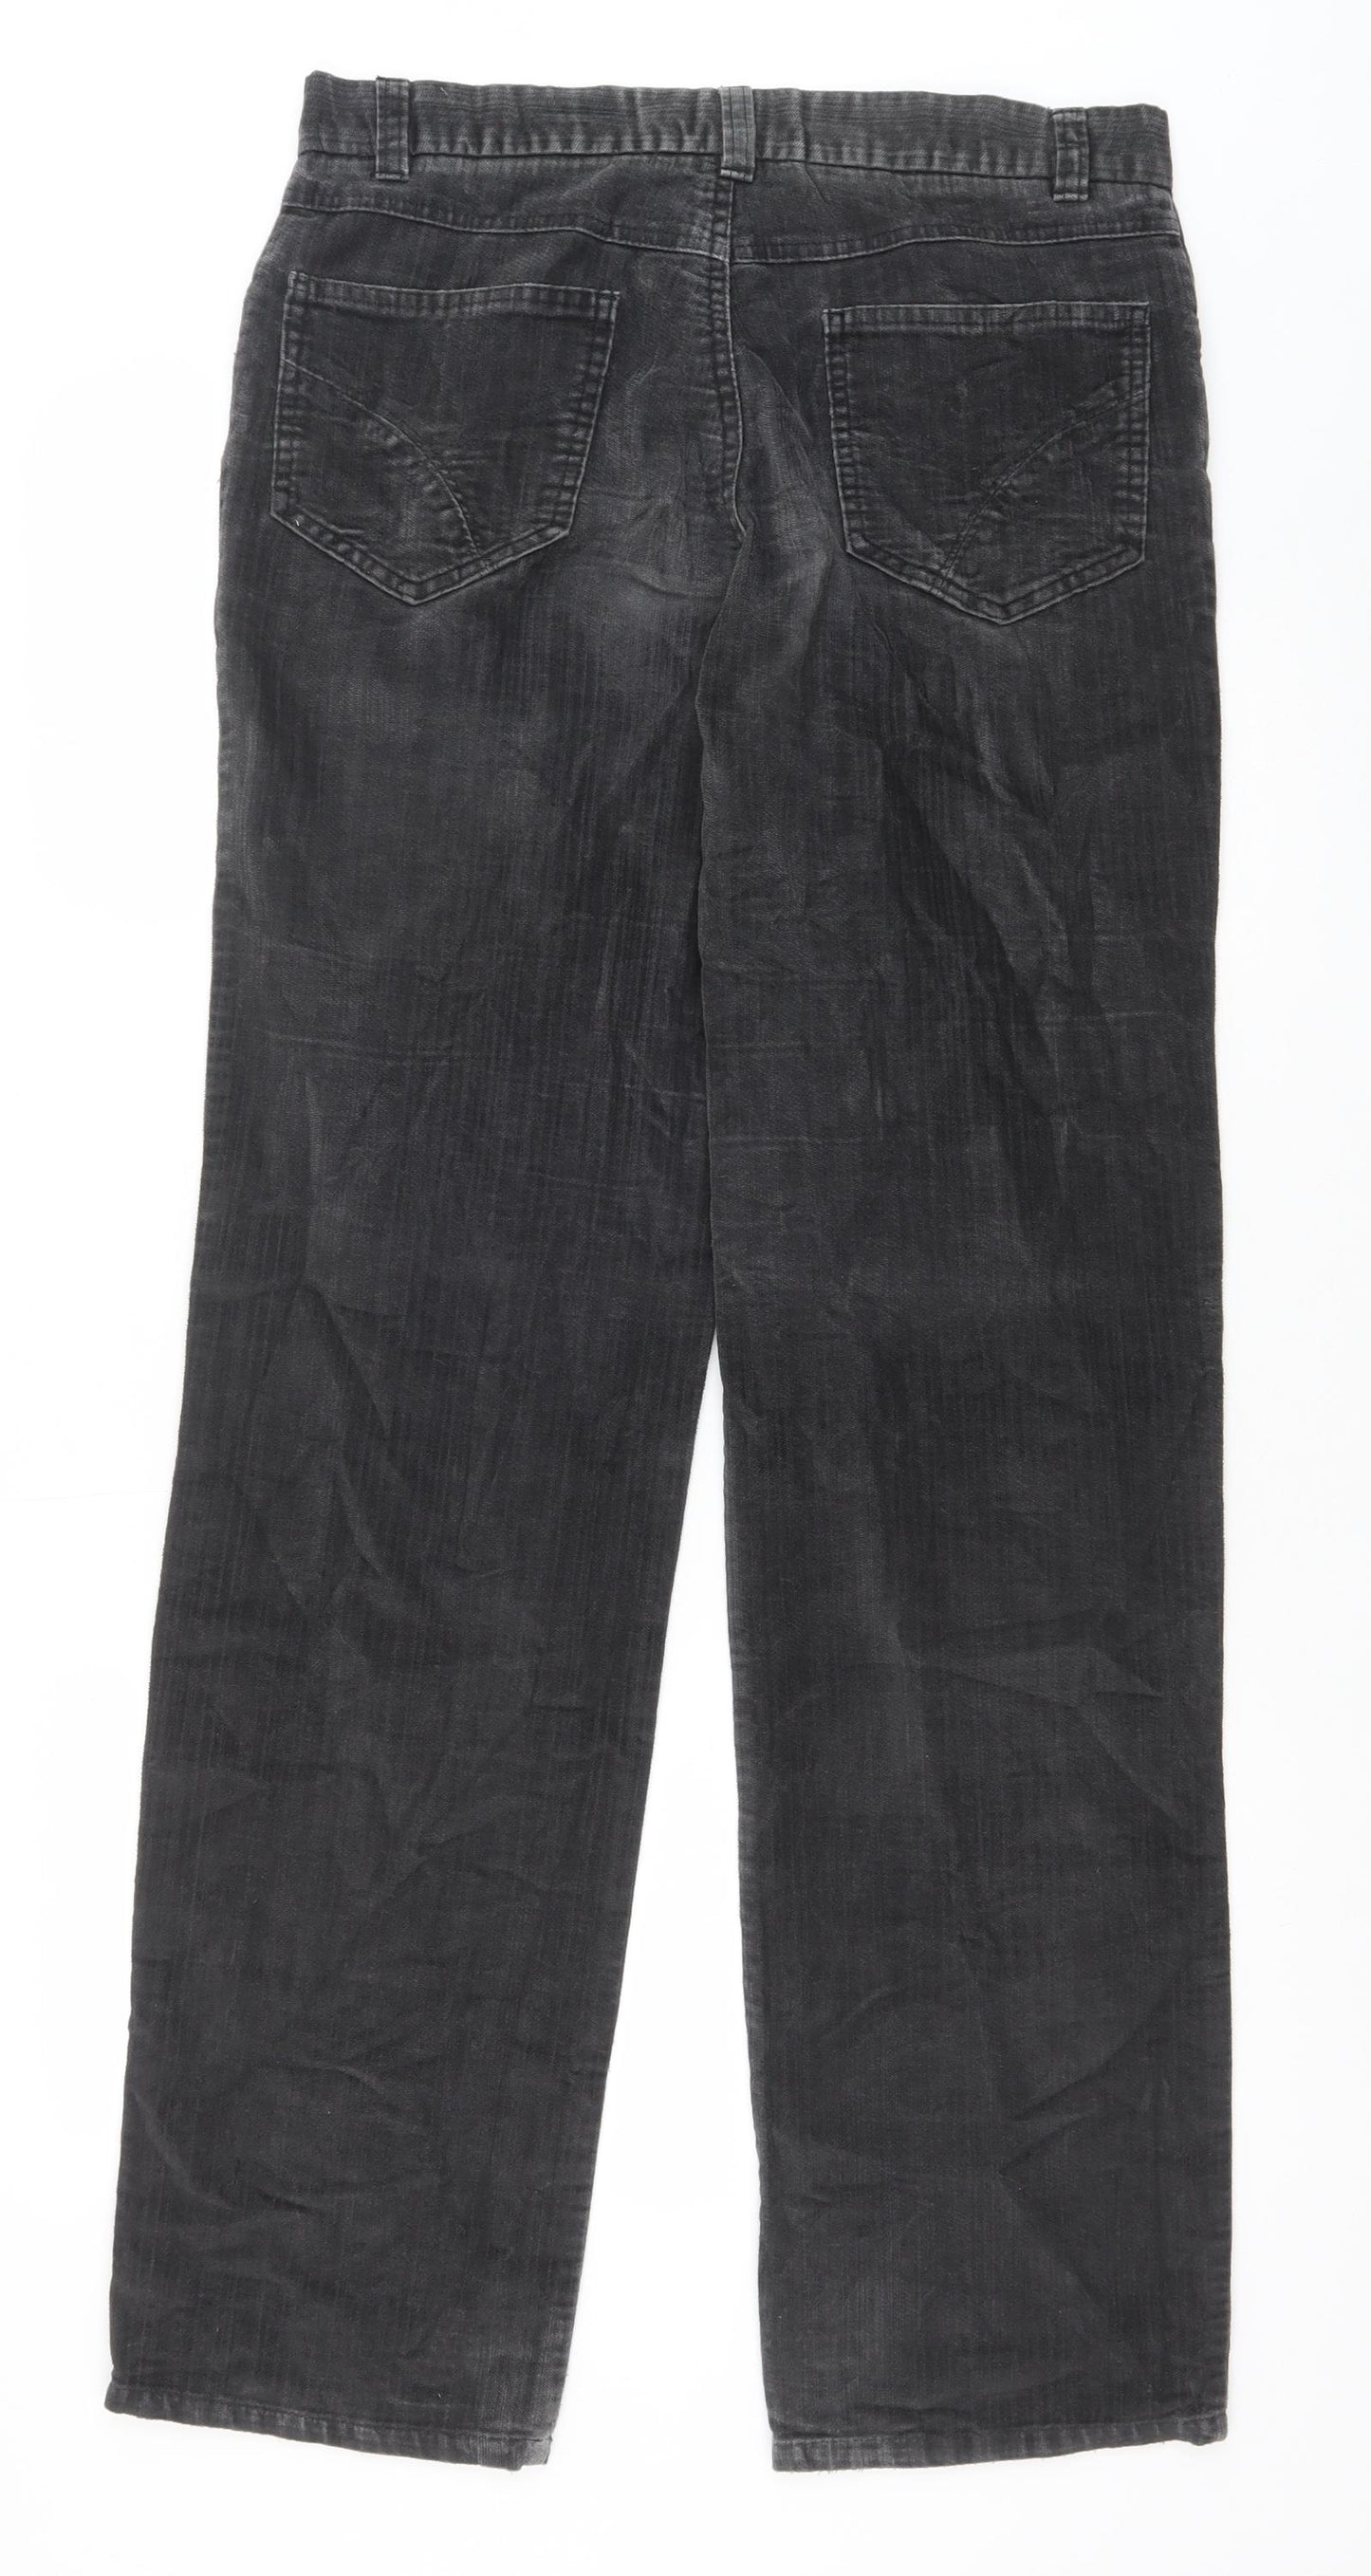 Debenhams Mens Grey Cotton Trousers Size 32 in Regular Zip